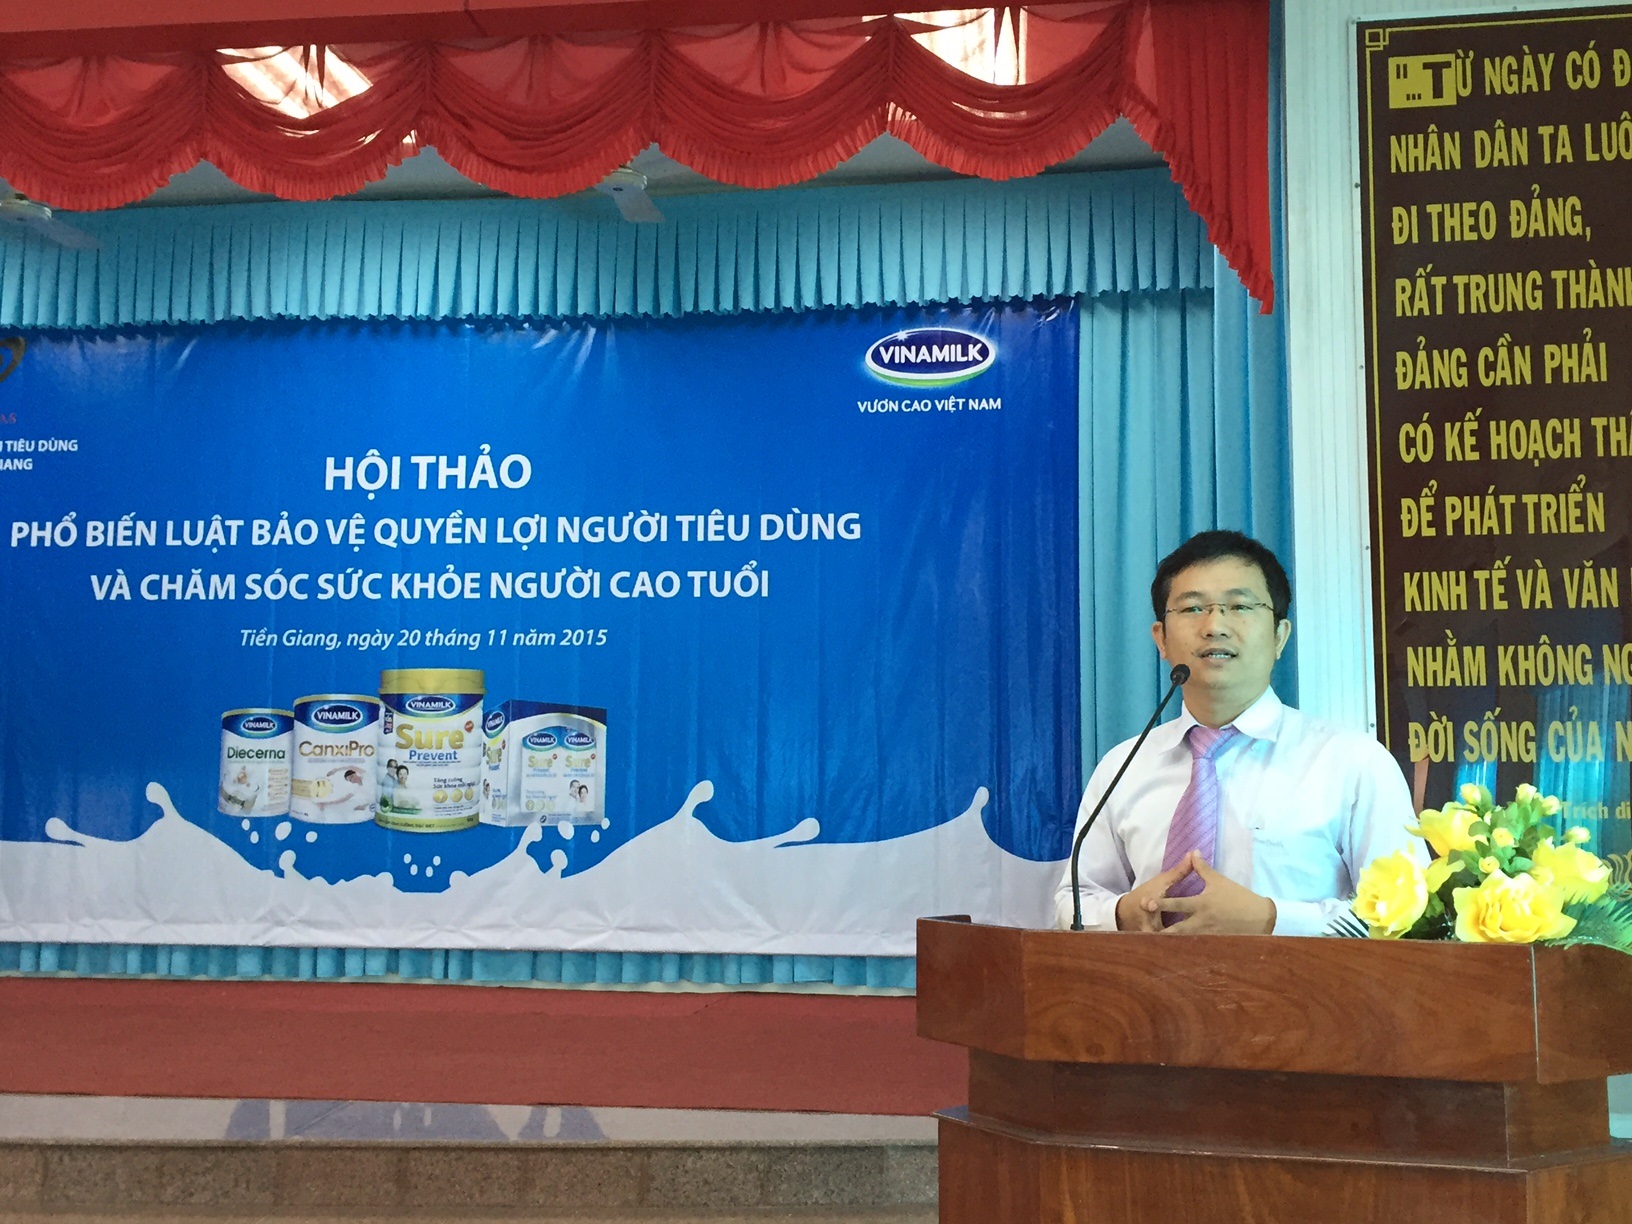 Bà Mai Thanh Việt – Giám Đốc Marketing ngành hàng sữa bột, Vinamilk giới thiệu các hoạt động của công ty với người tiêu dùng tại Tiền Giang